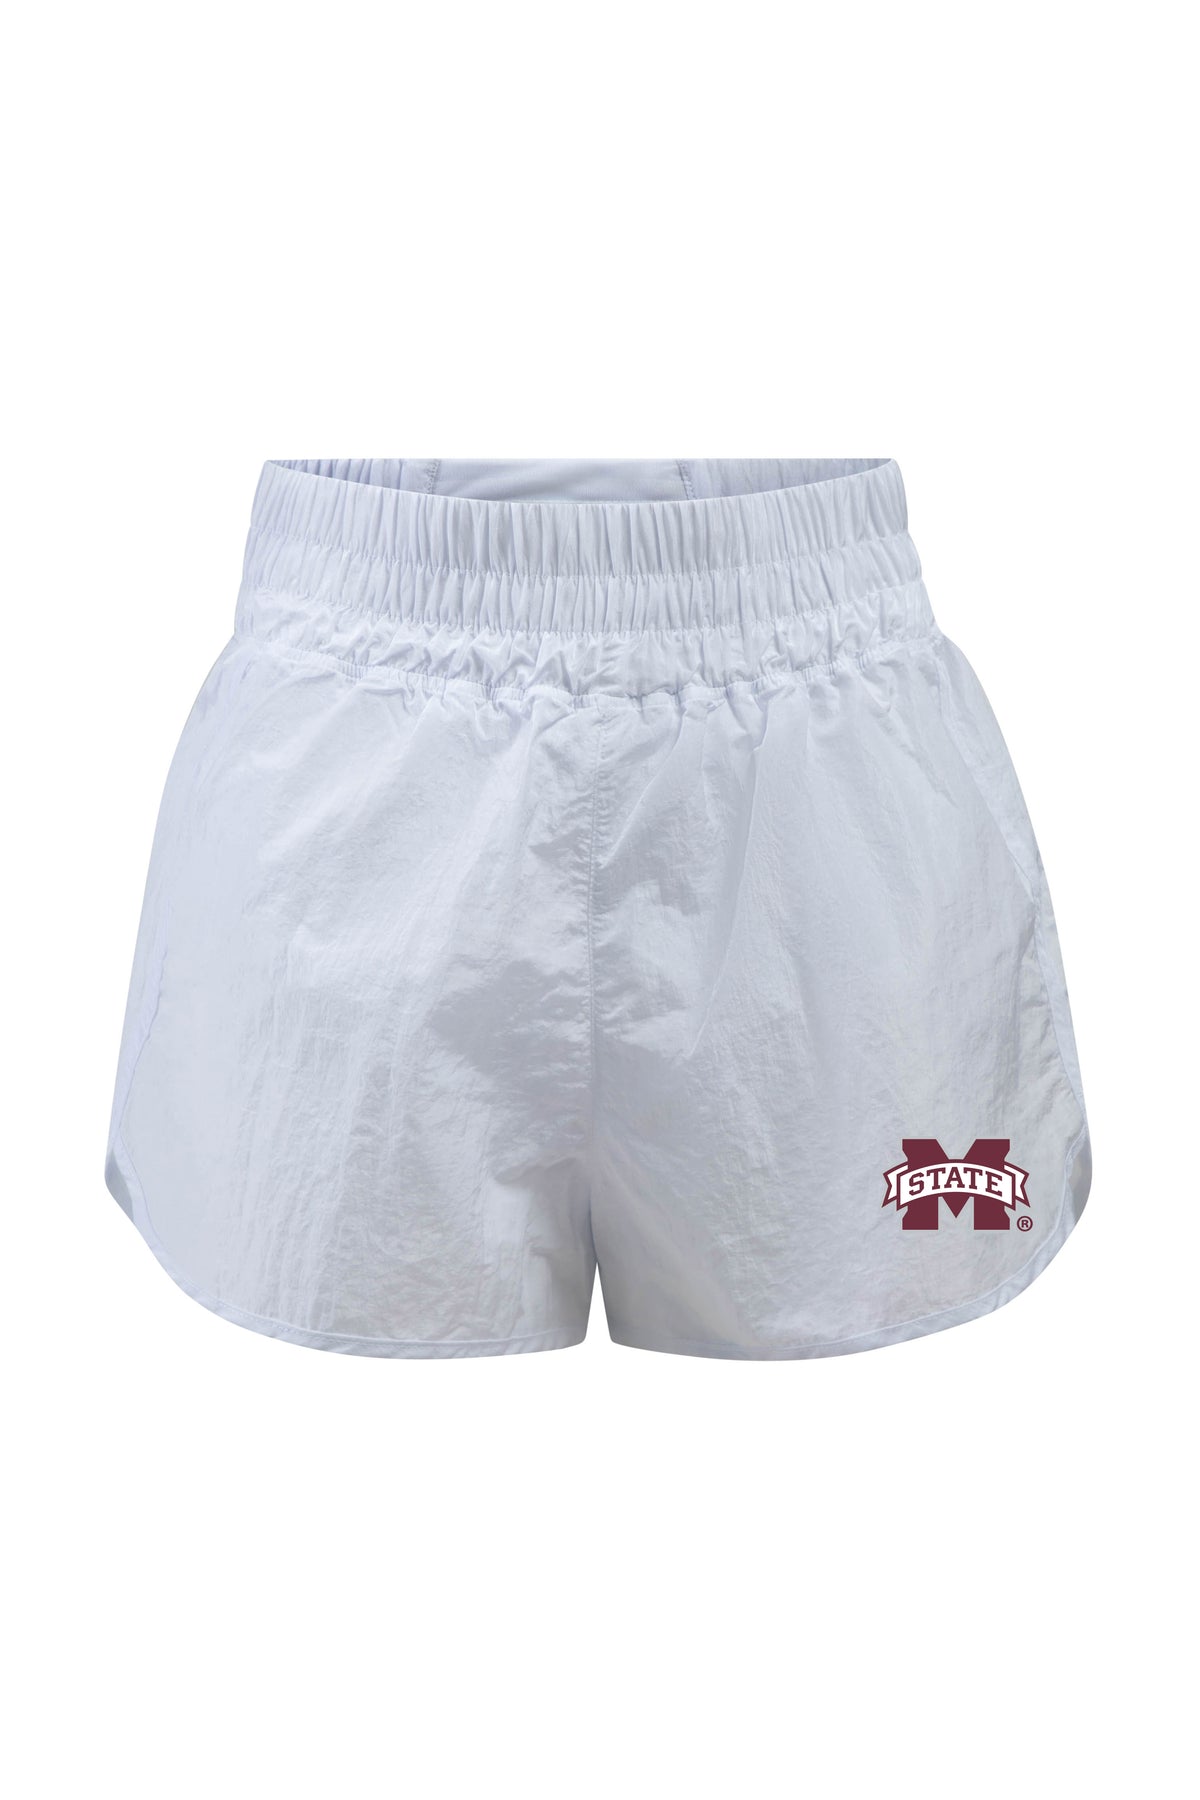 Mississippi State University Boxer Short